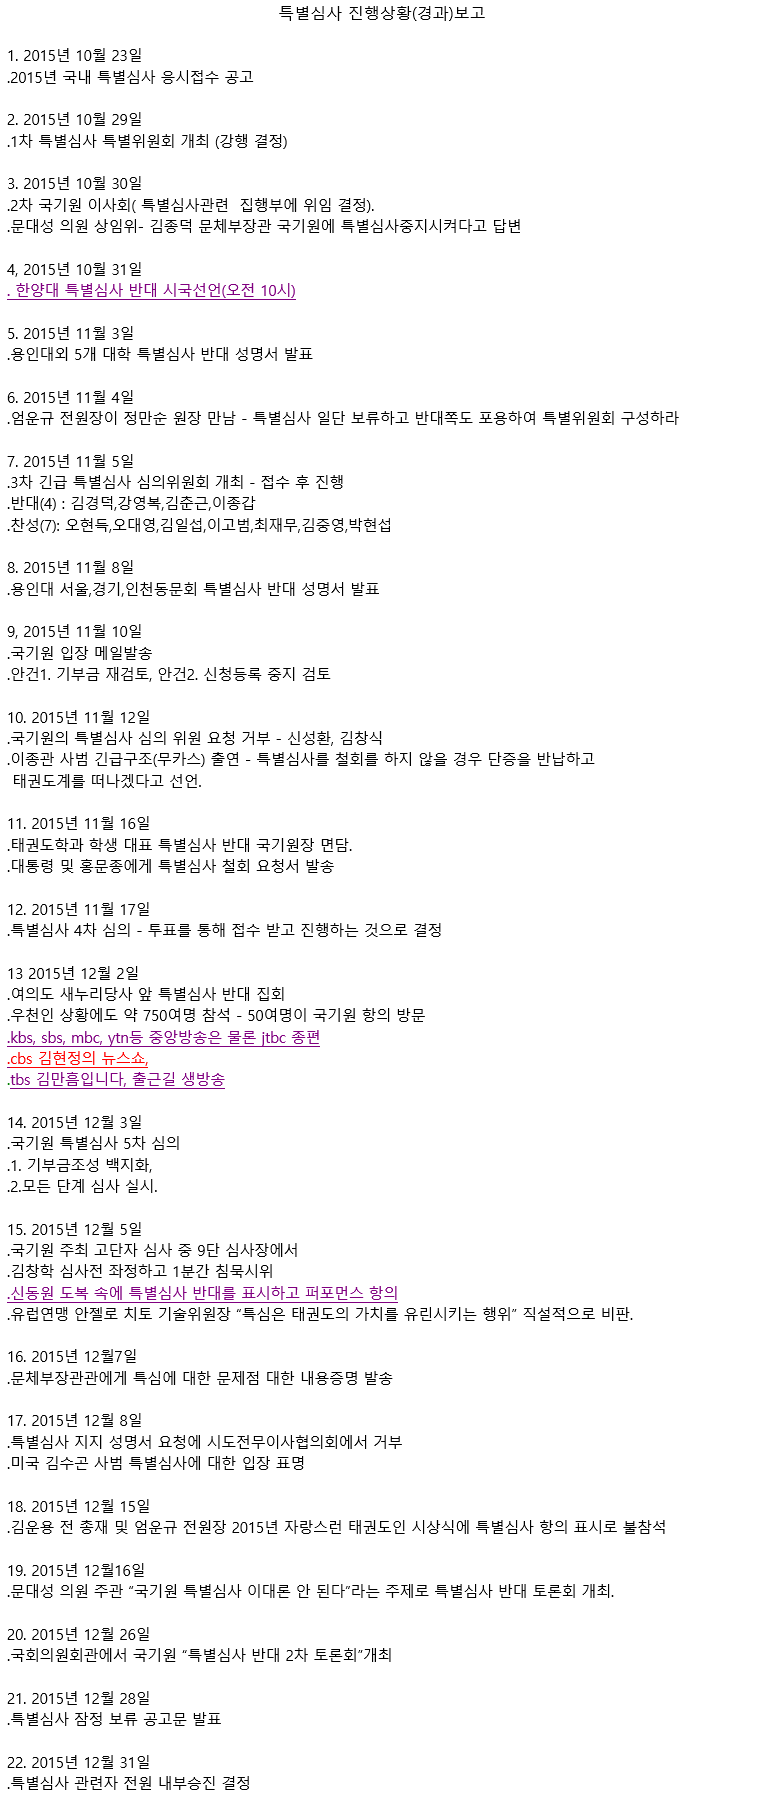 20160111_특별심사진행상황에다른경과보고_01.gif